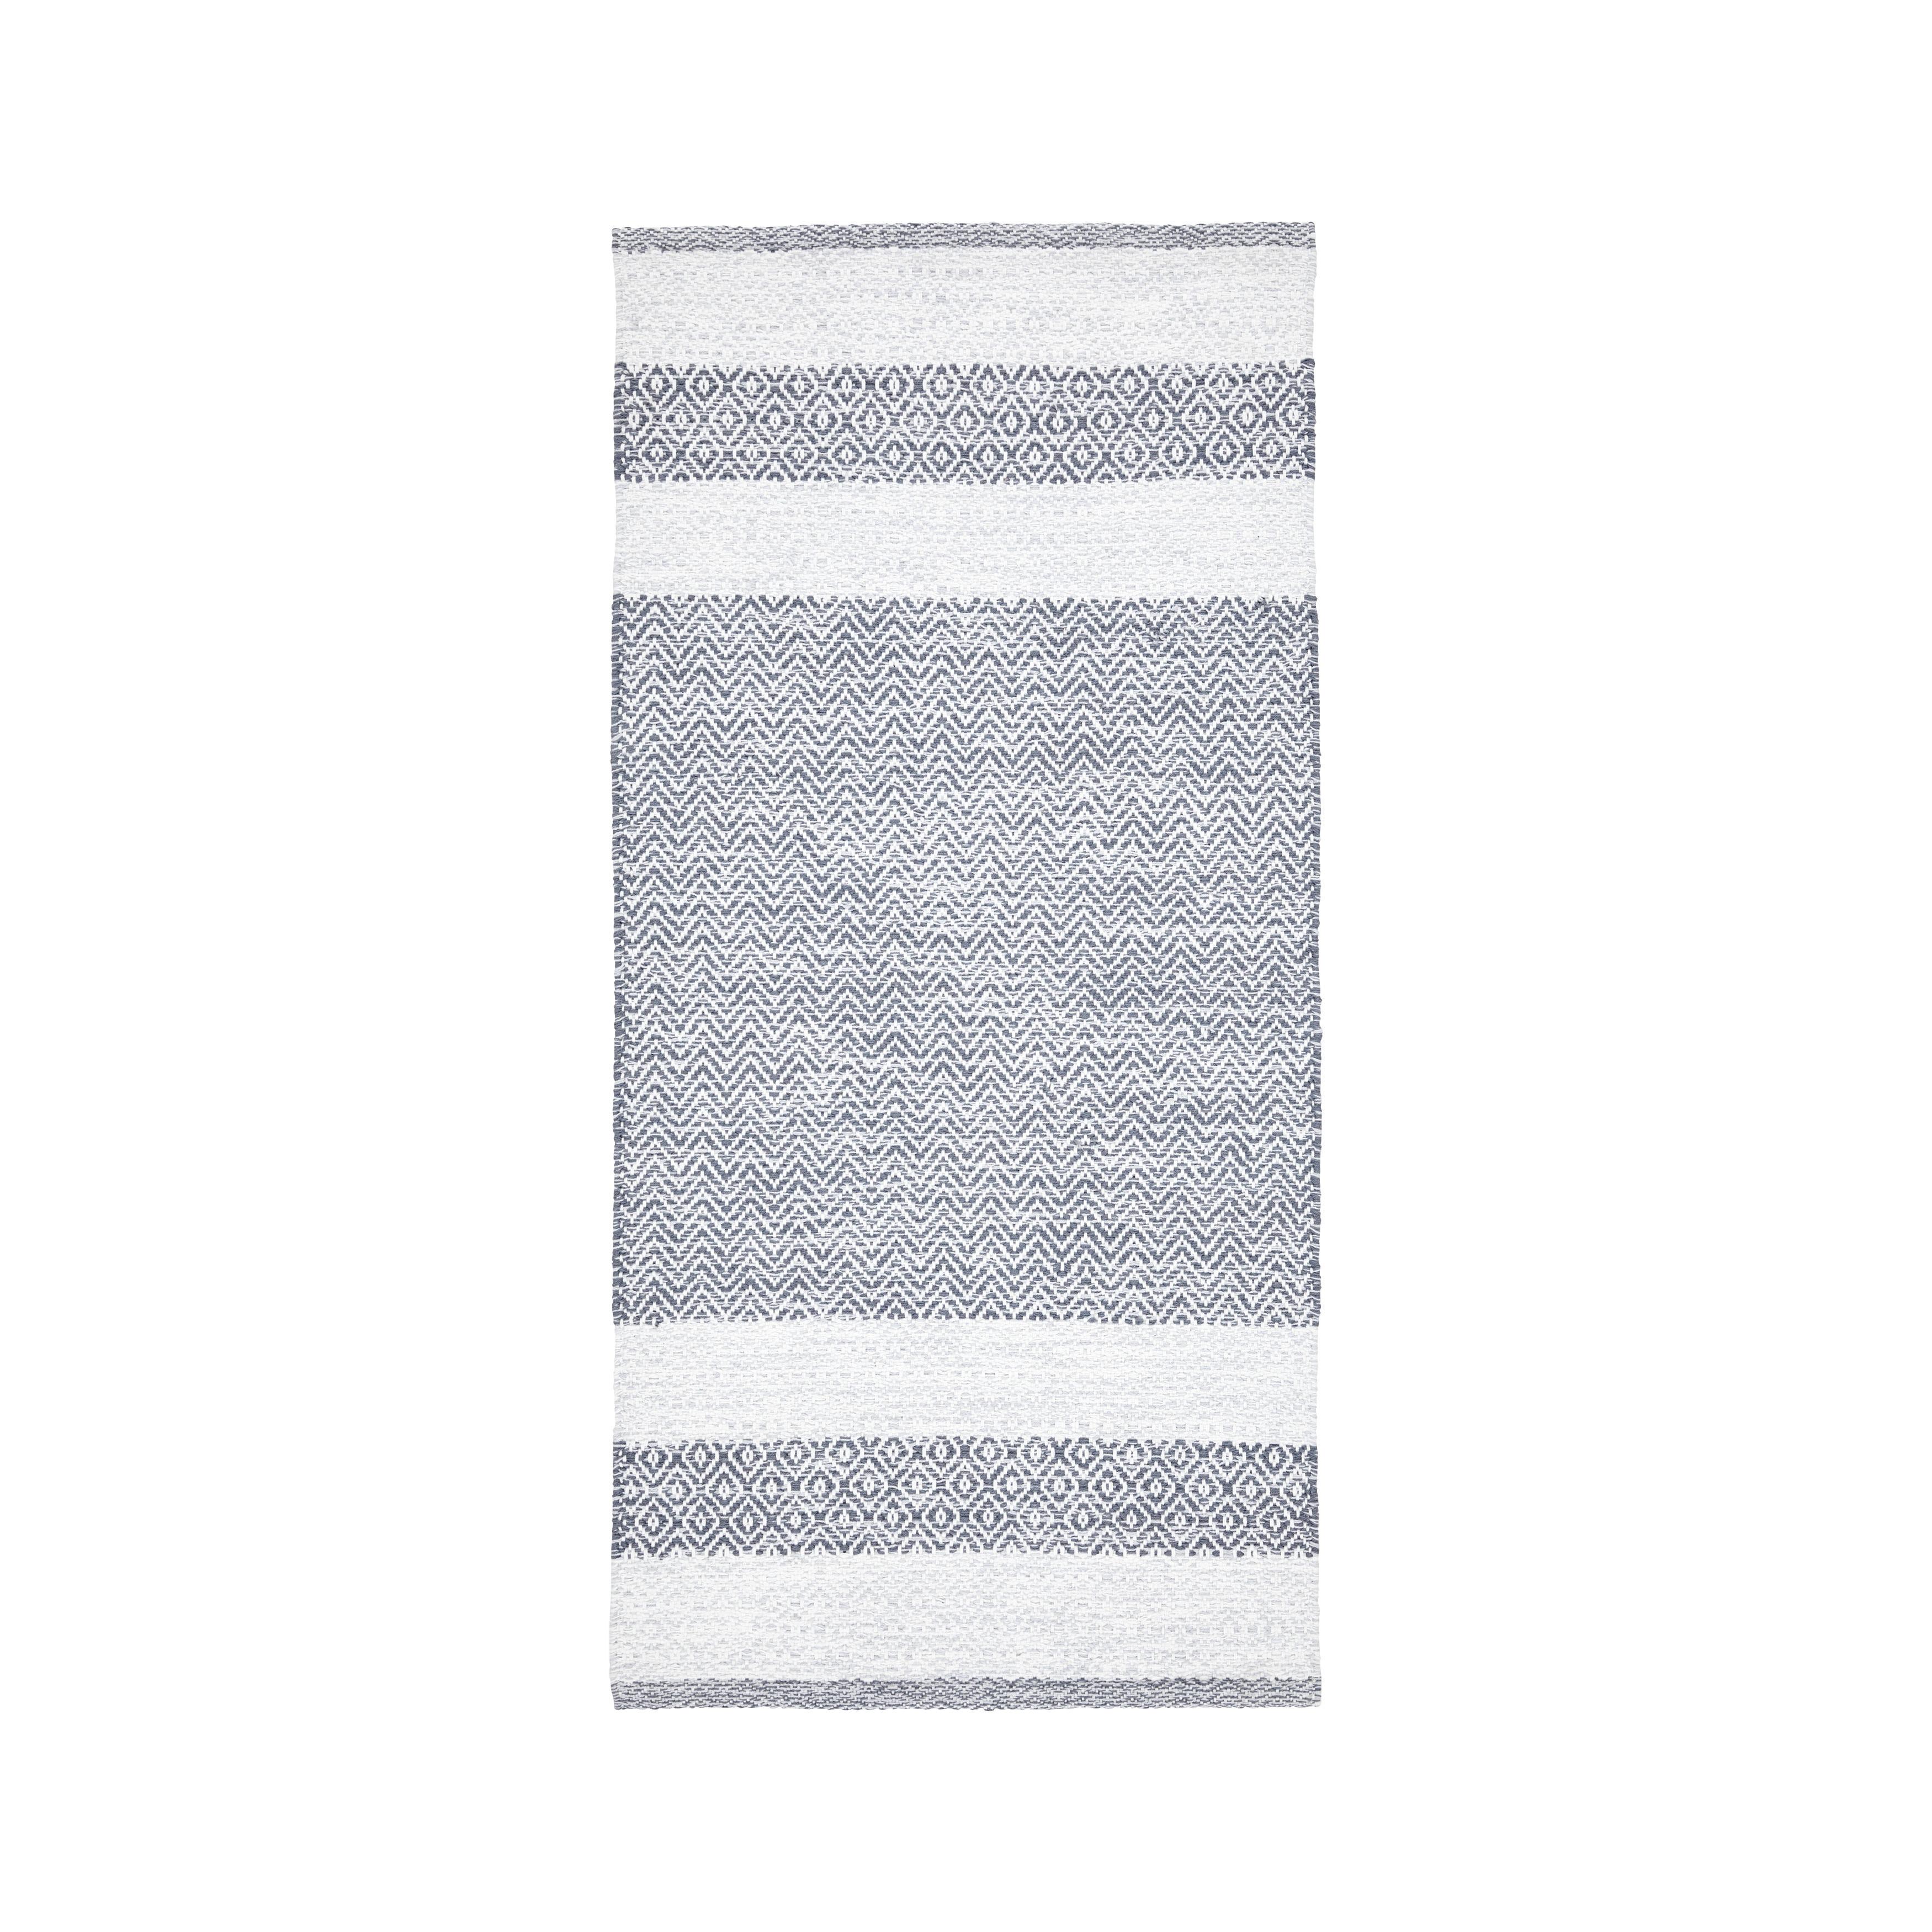 Ručno Tkani Tepih 60/120 Cm Elisa - svijetlo siva, Modern, tekstil (60/120cm) - Modern Living